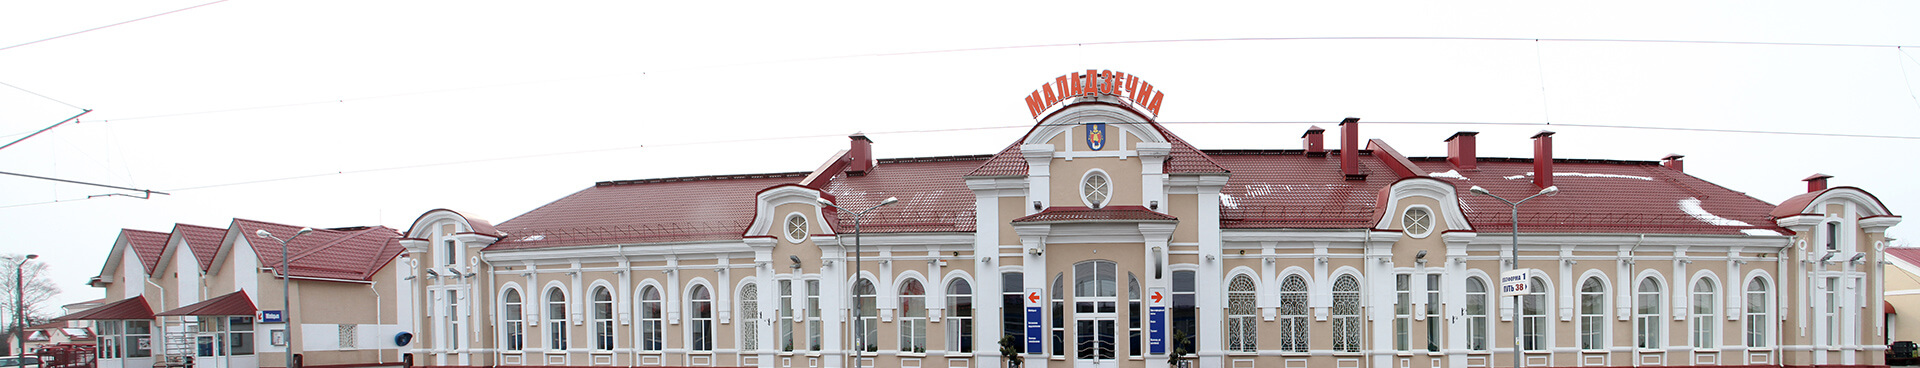 Maladziečna Railway Station